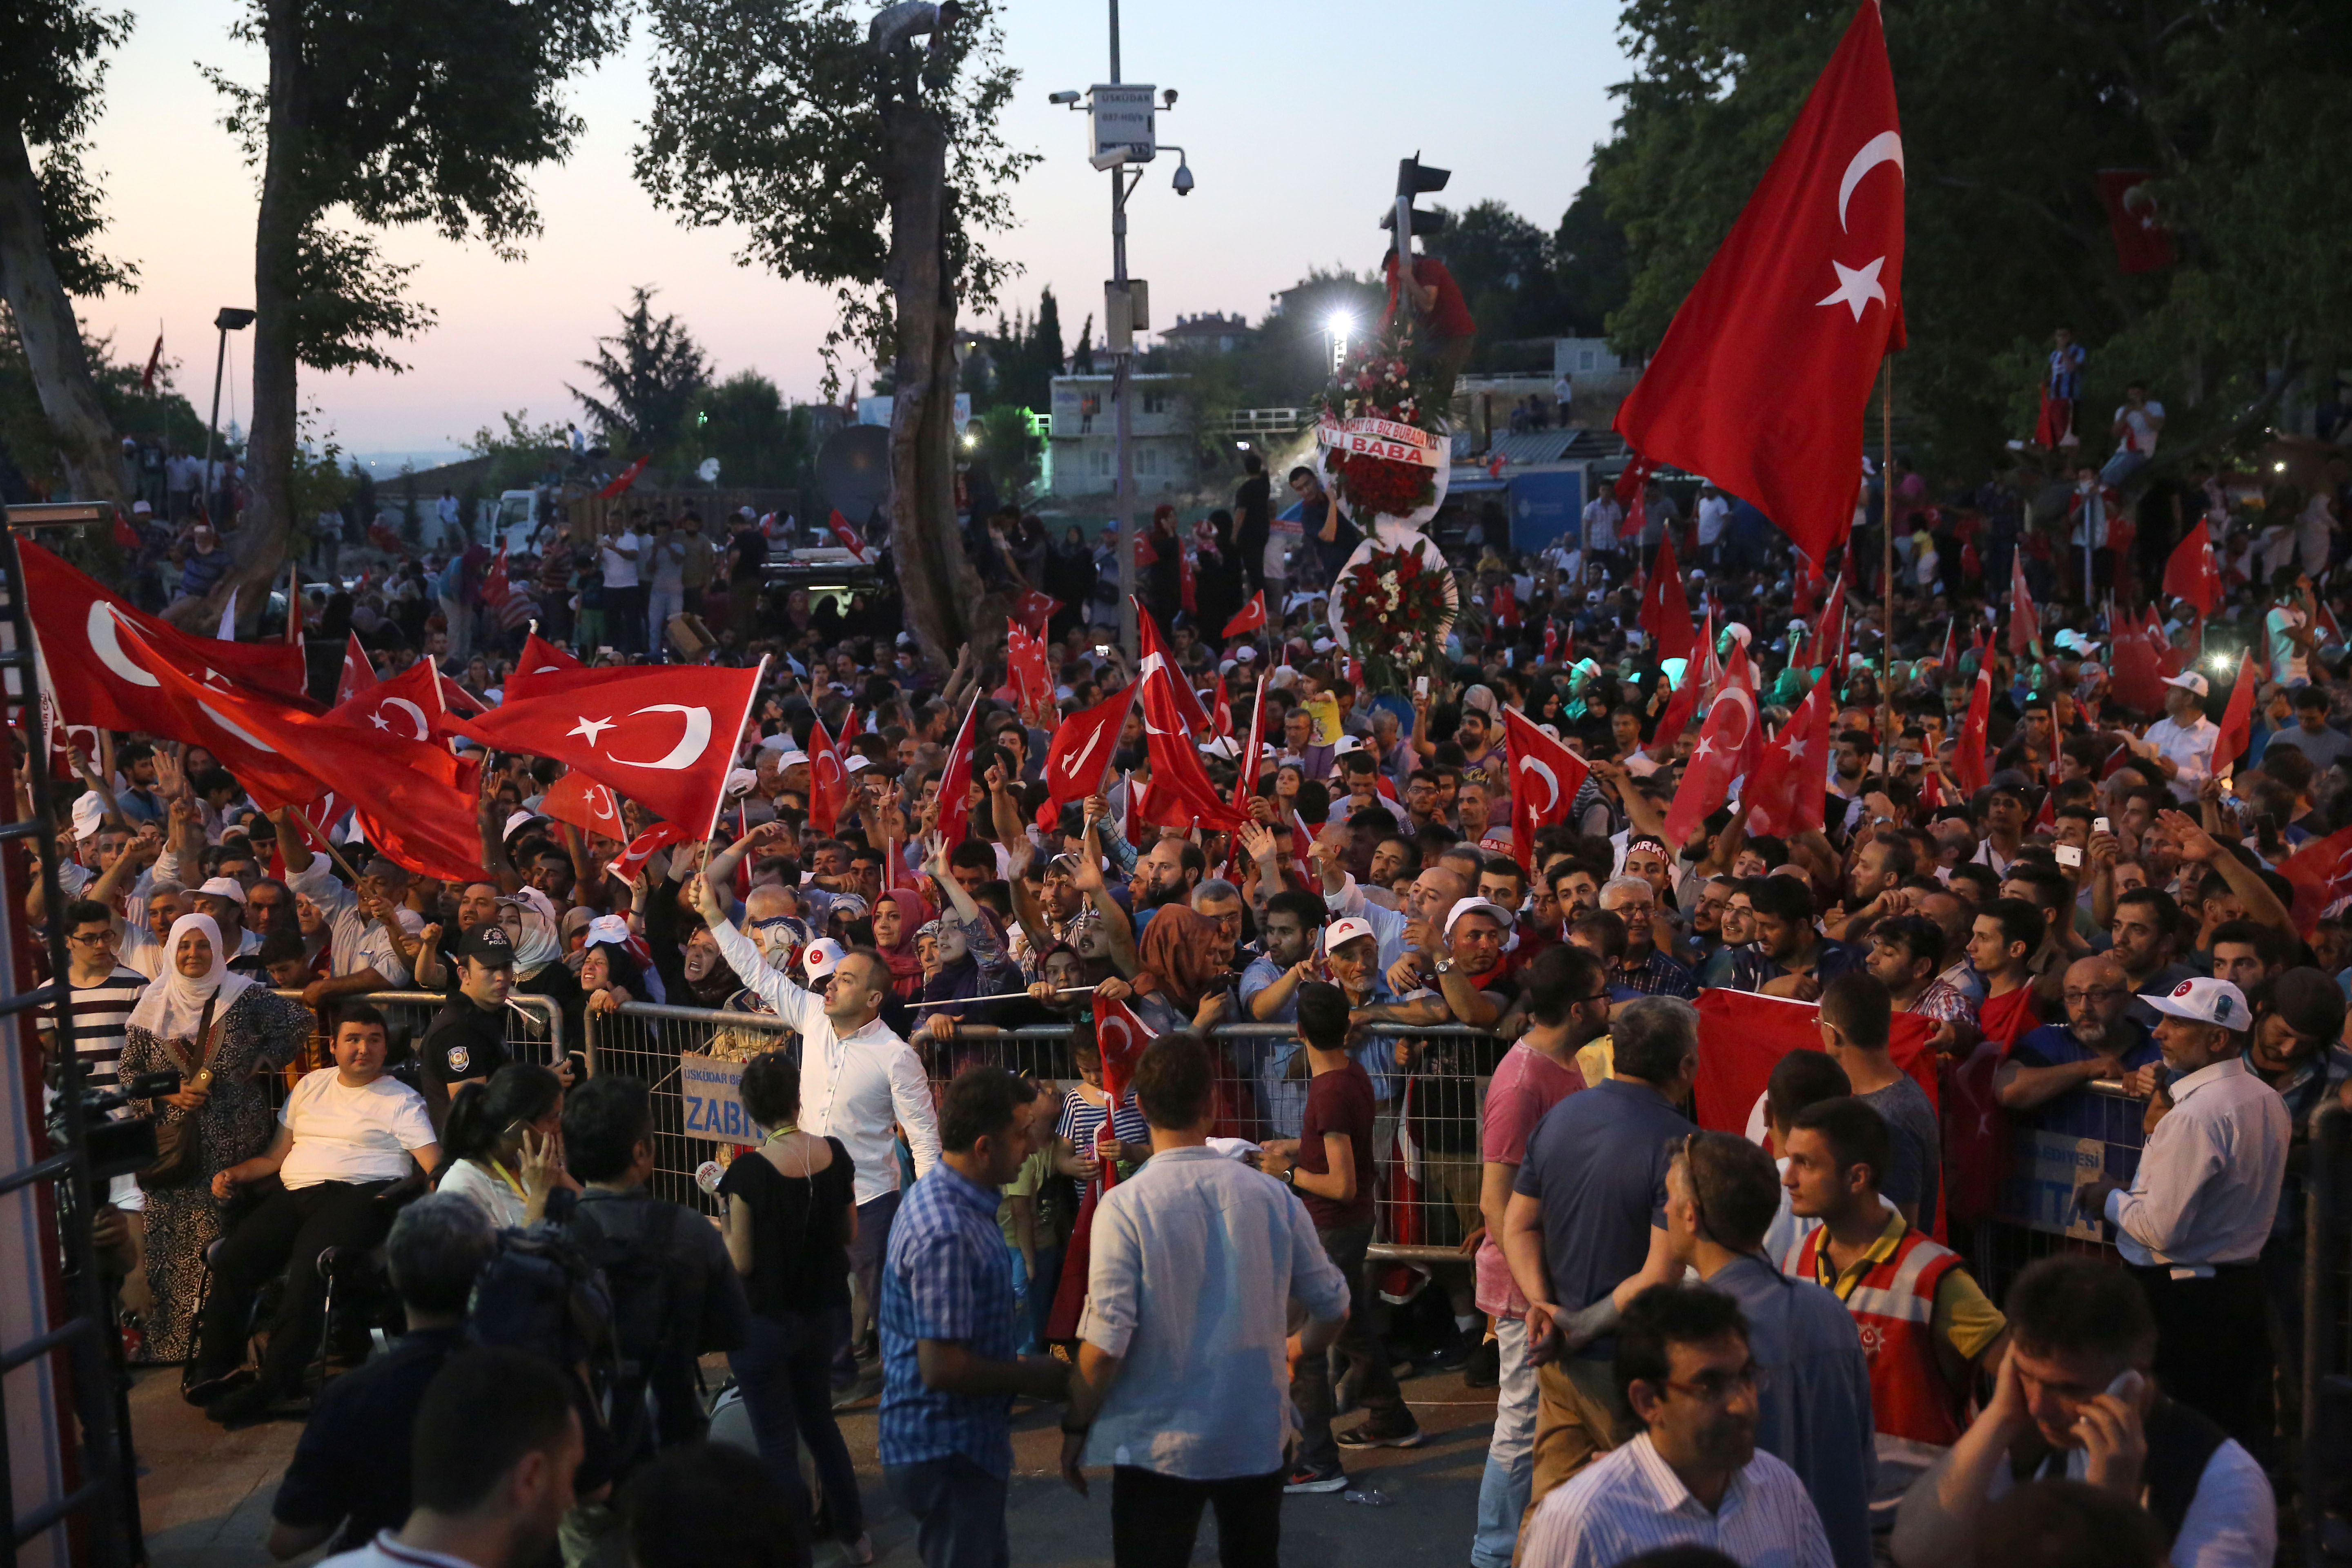 المواطنون المحتشدون بالأعلام التركية في أيديهم أمام منزل رئاسة الجمهورية.